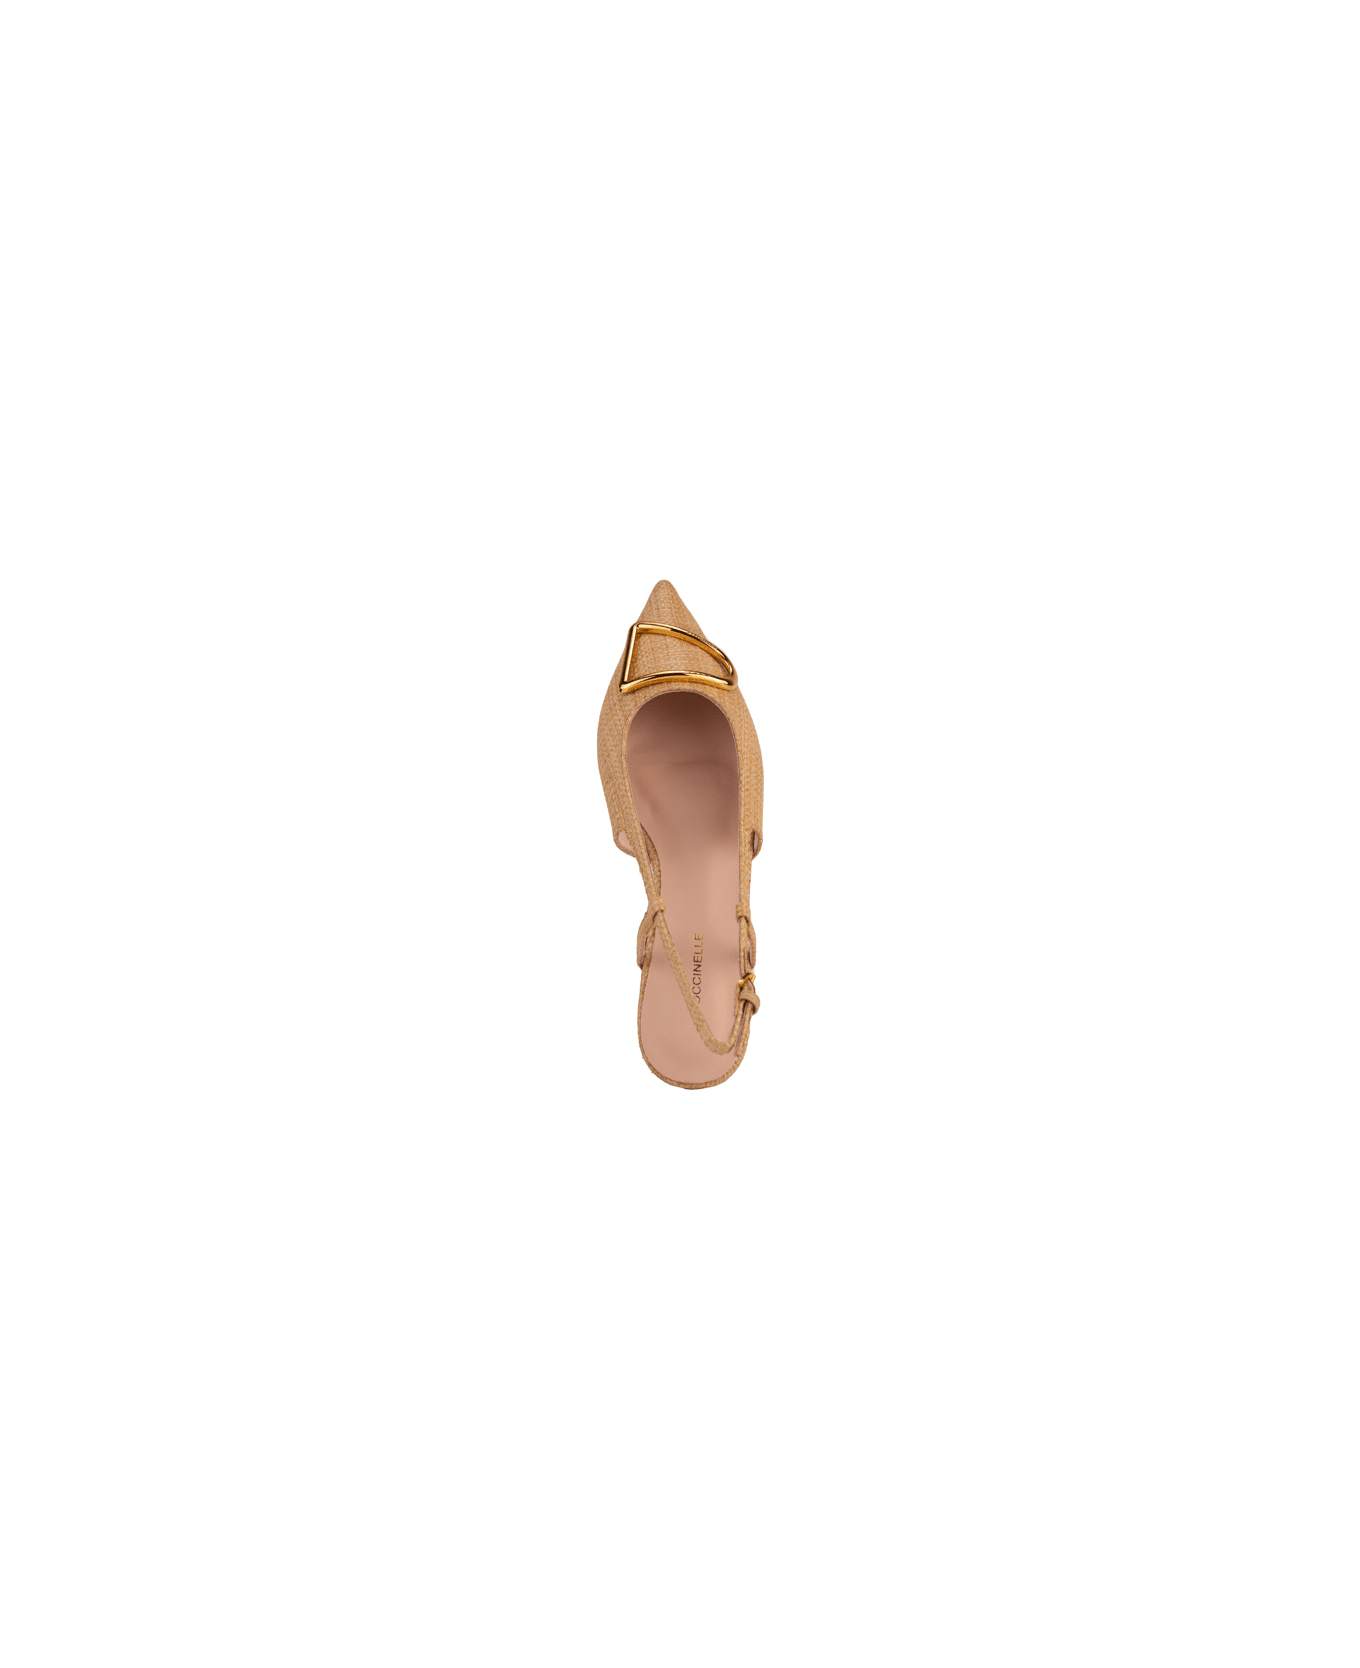 Coccinelle Raffia Sandal - Natural/cuir